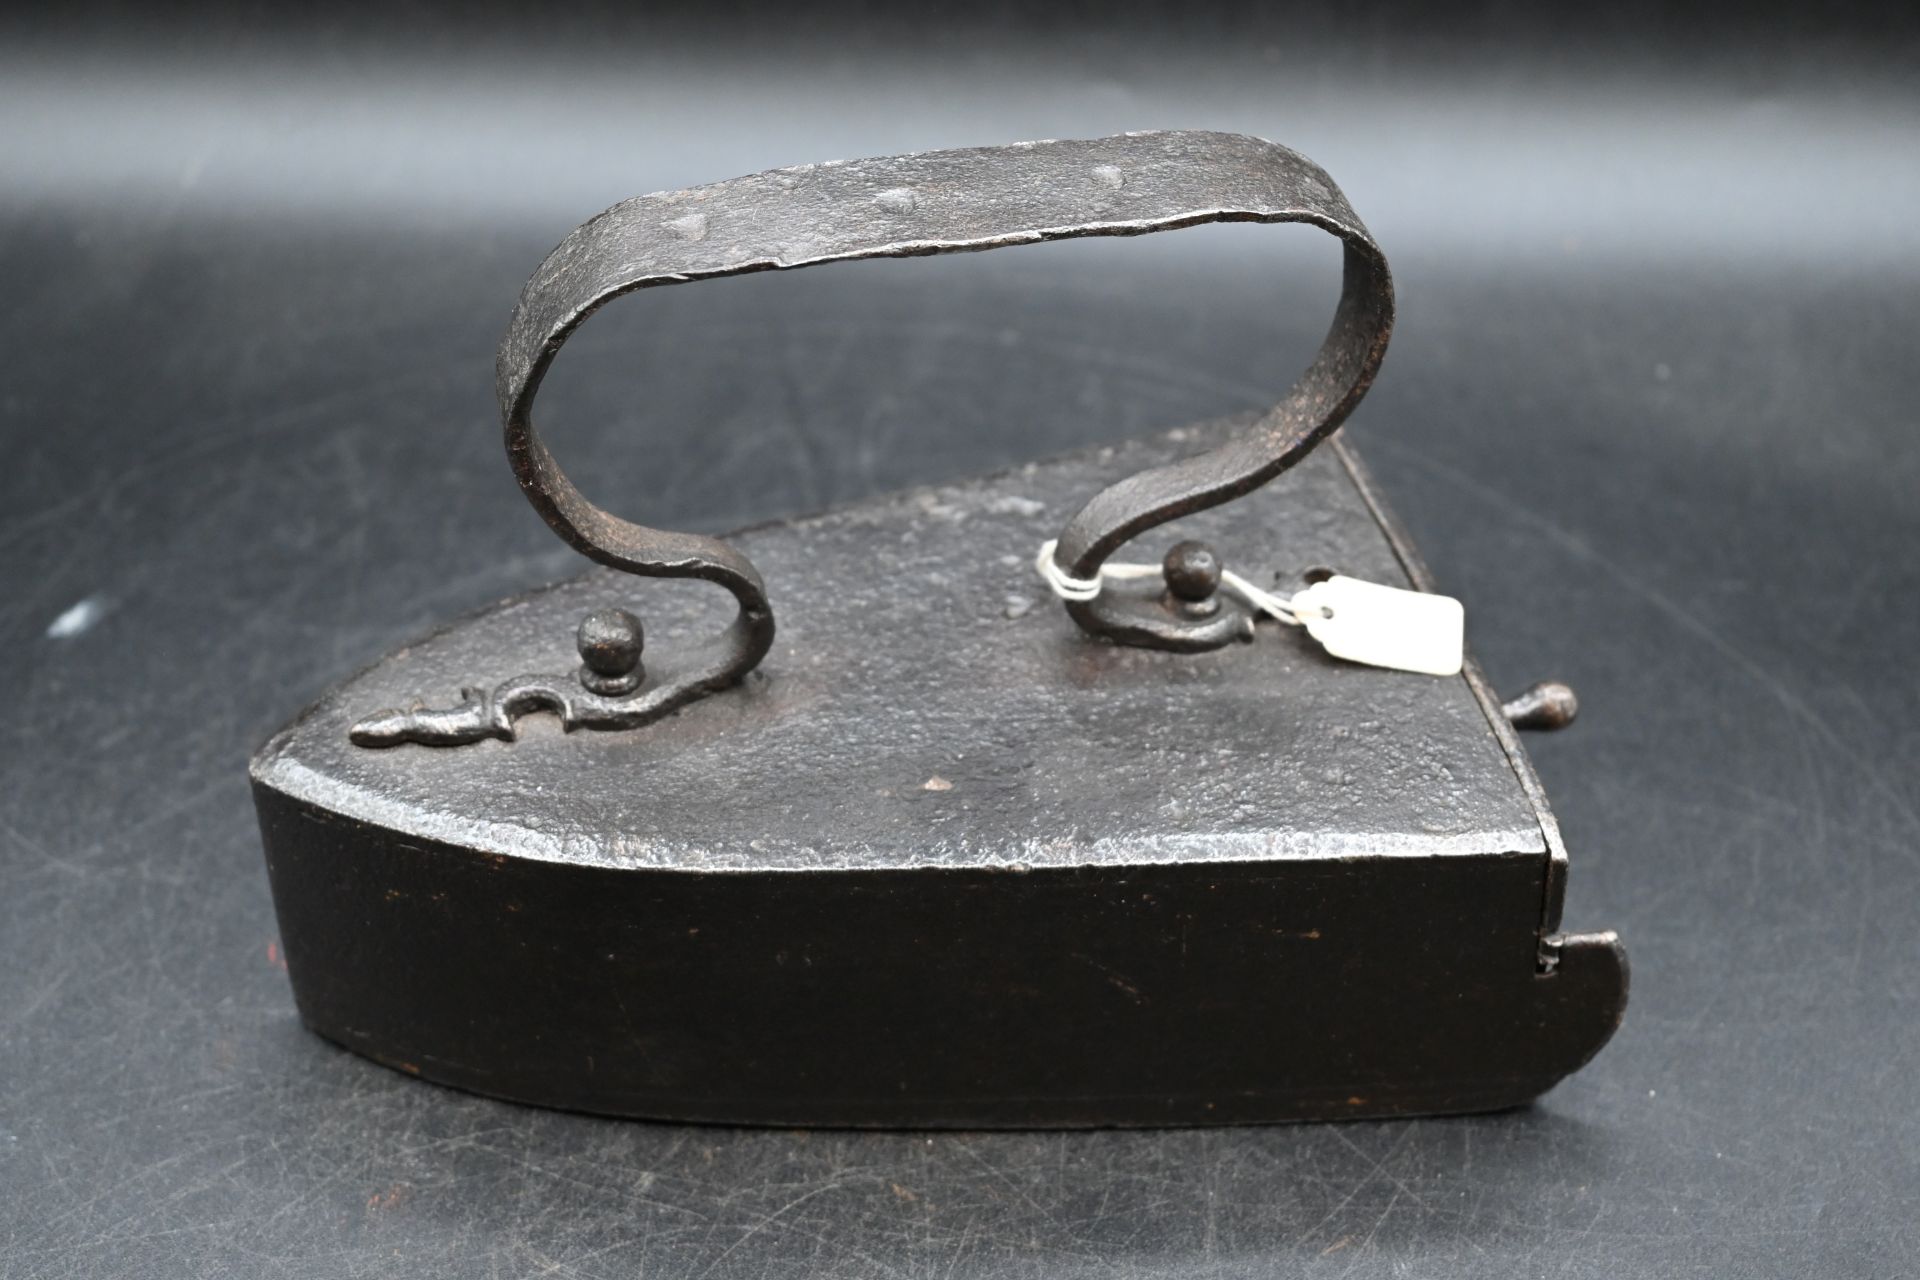 Vintage box iron with metal handle and slug